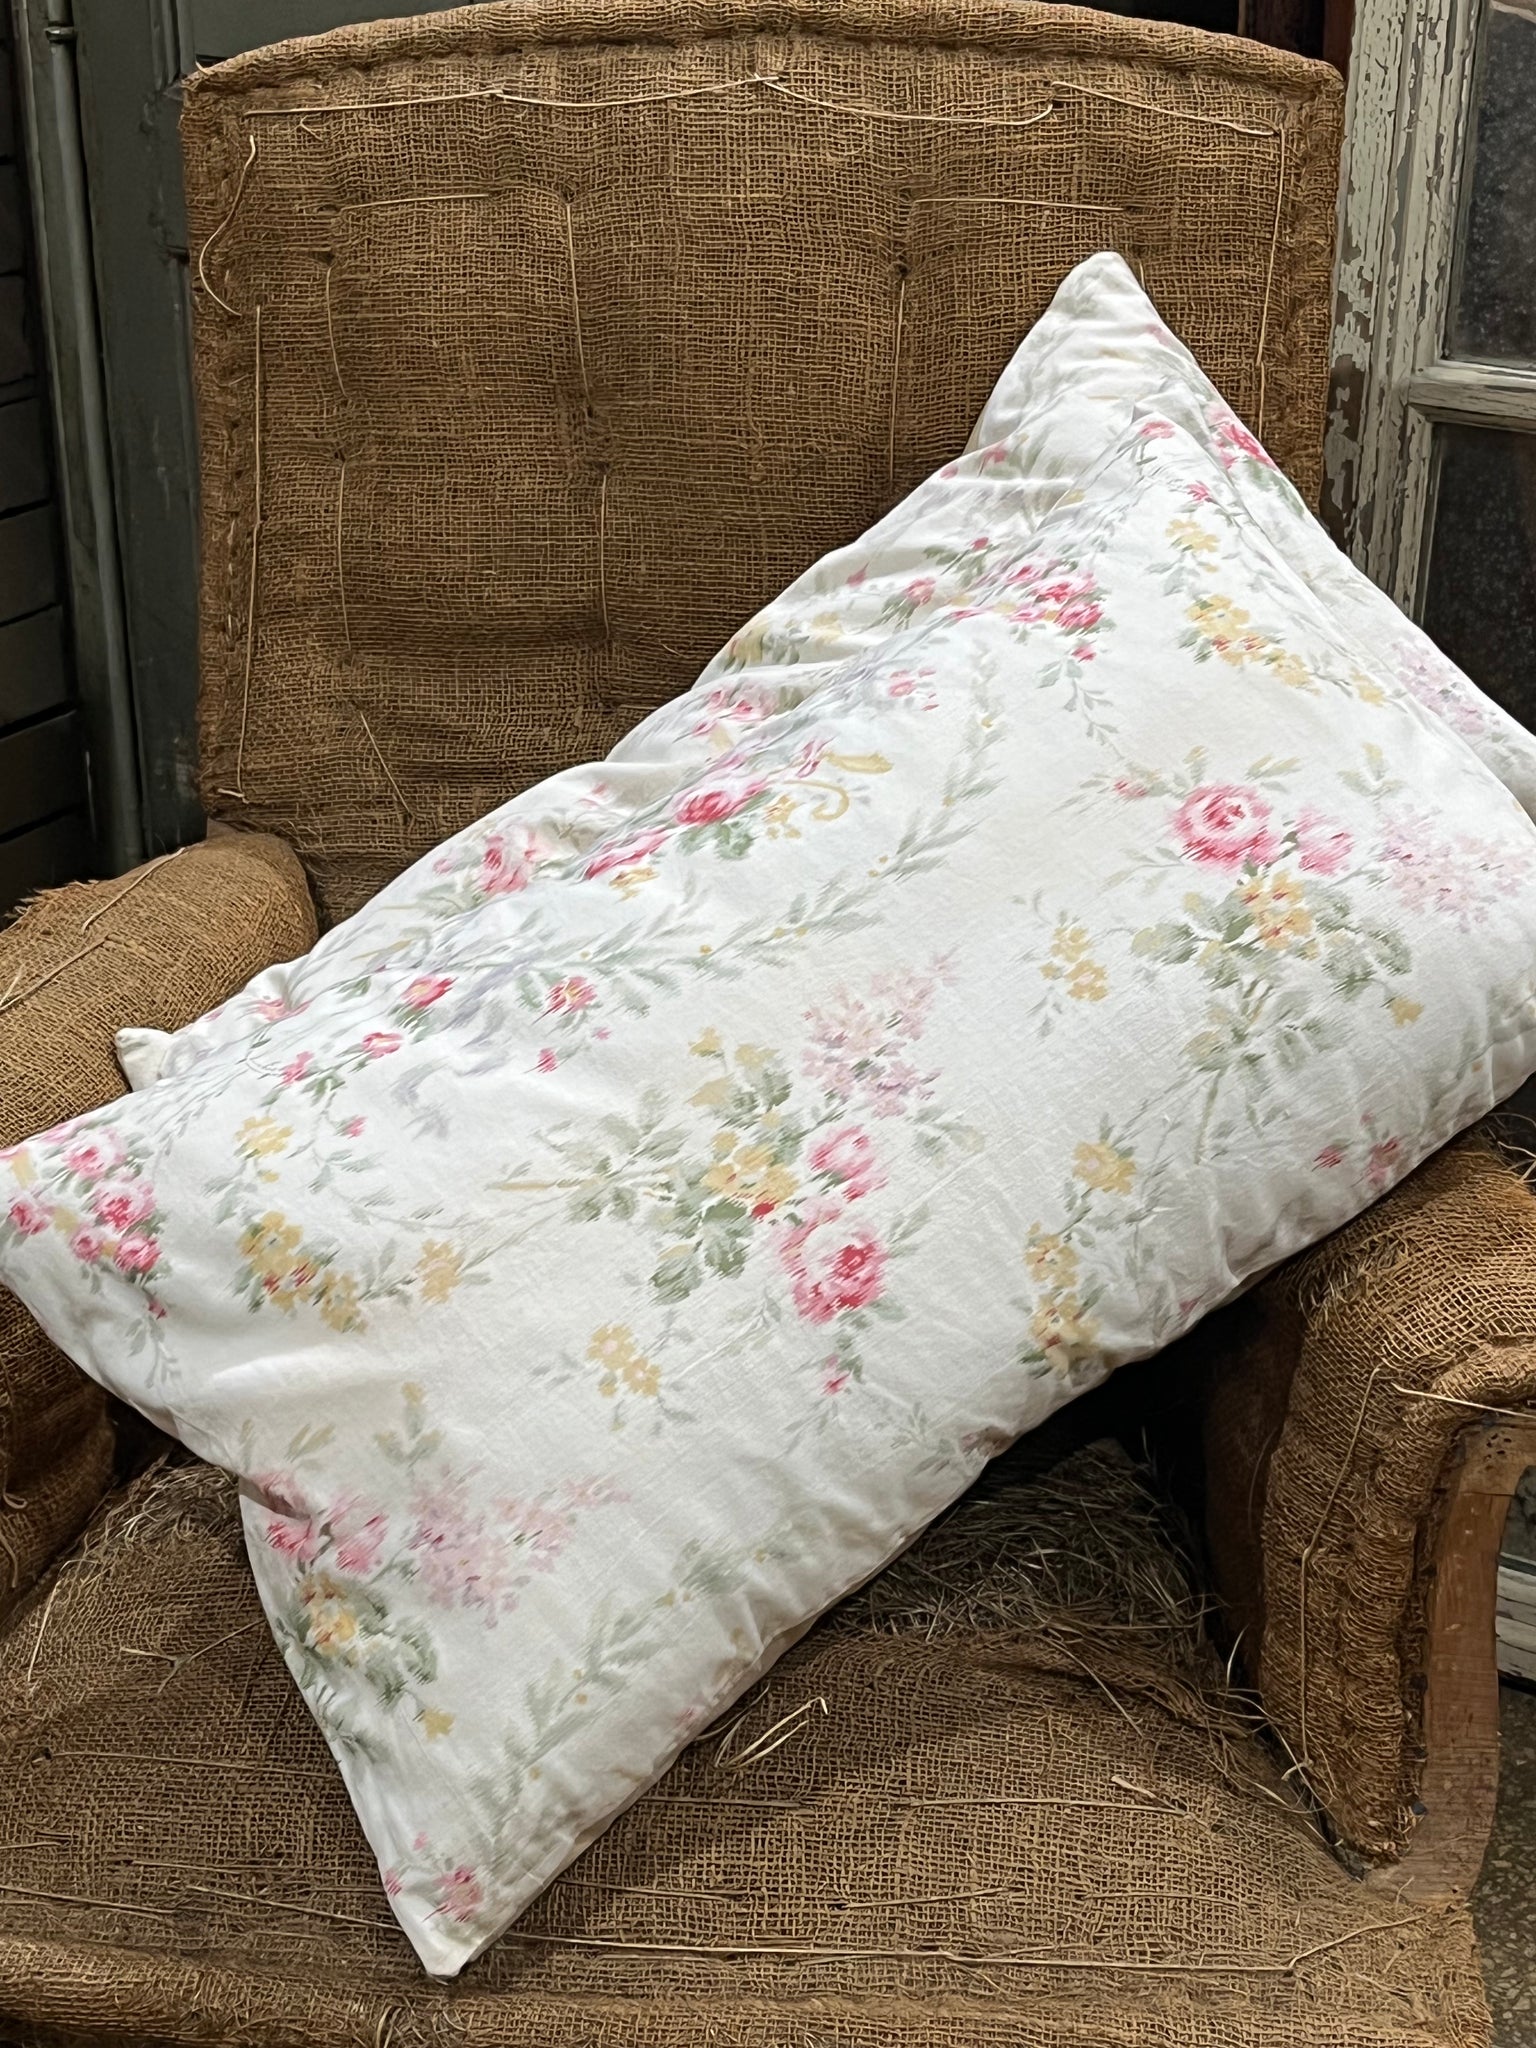 Floral antique cushion